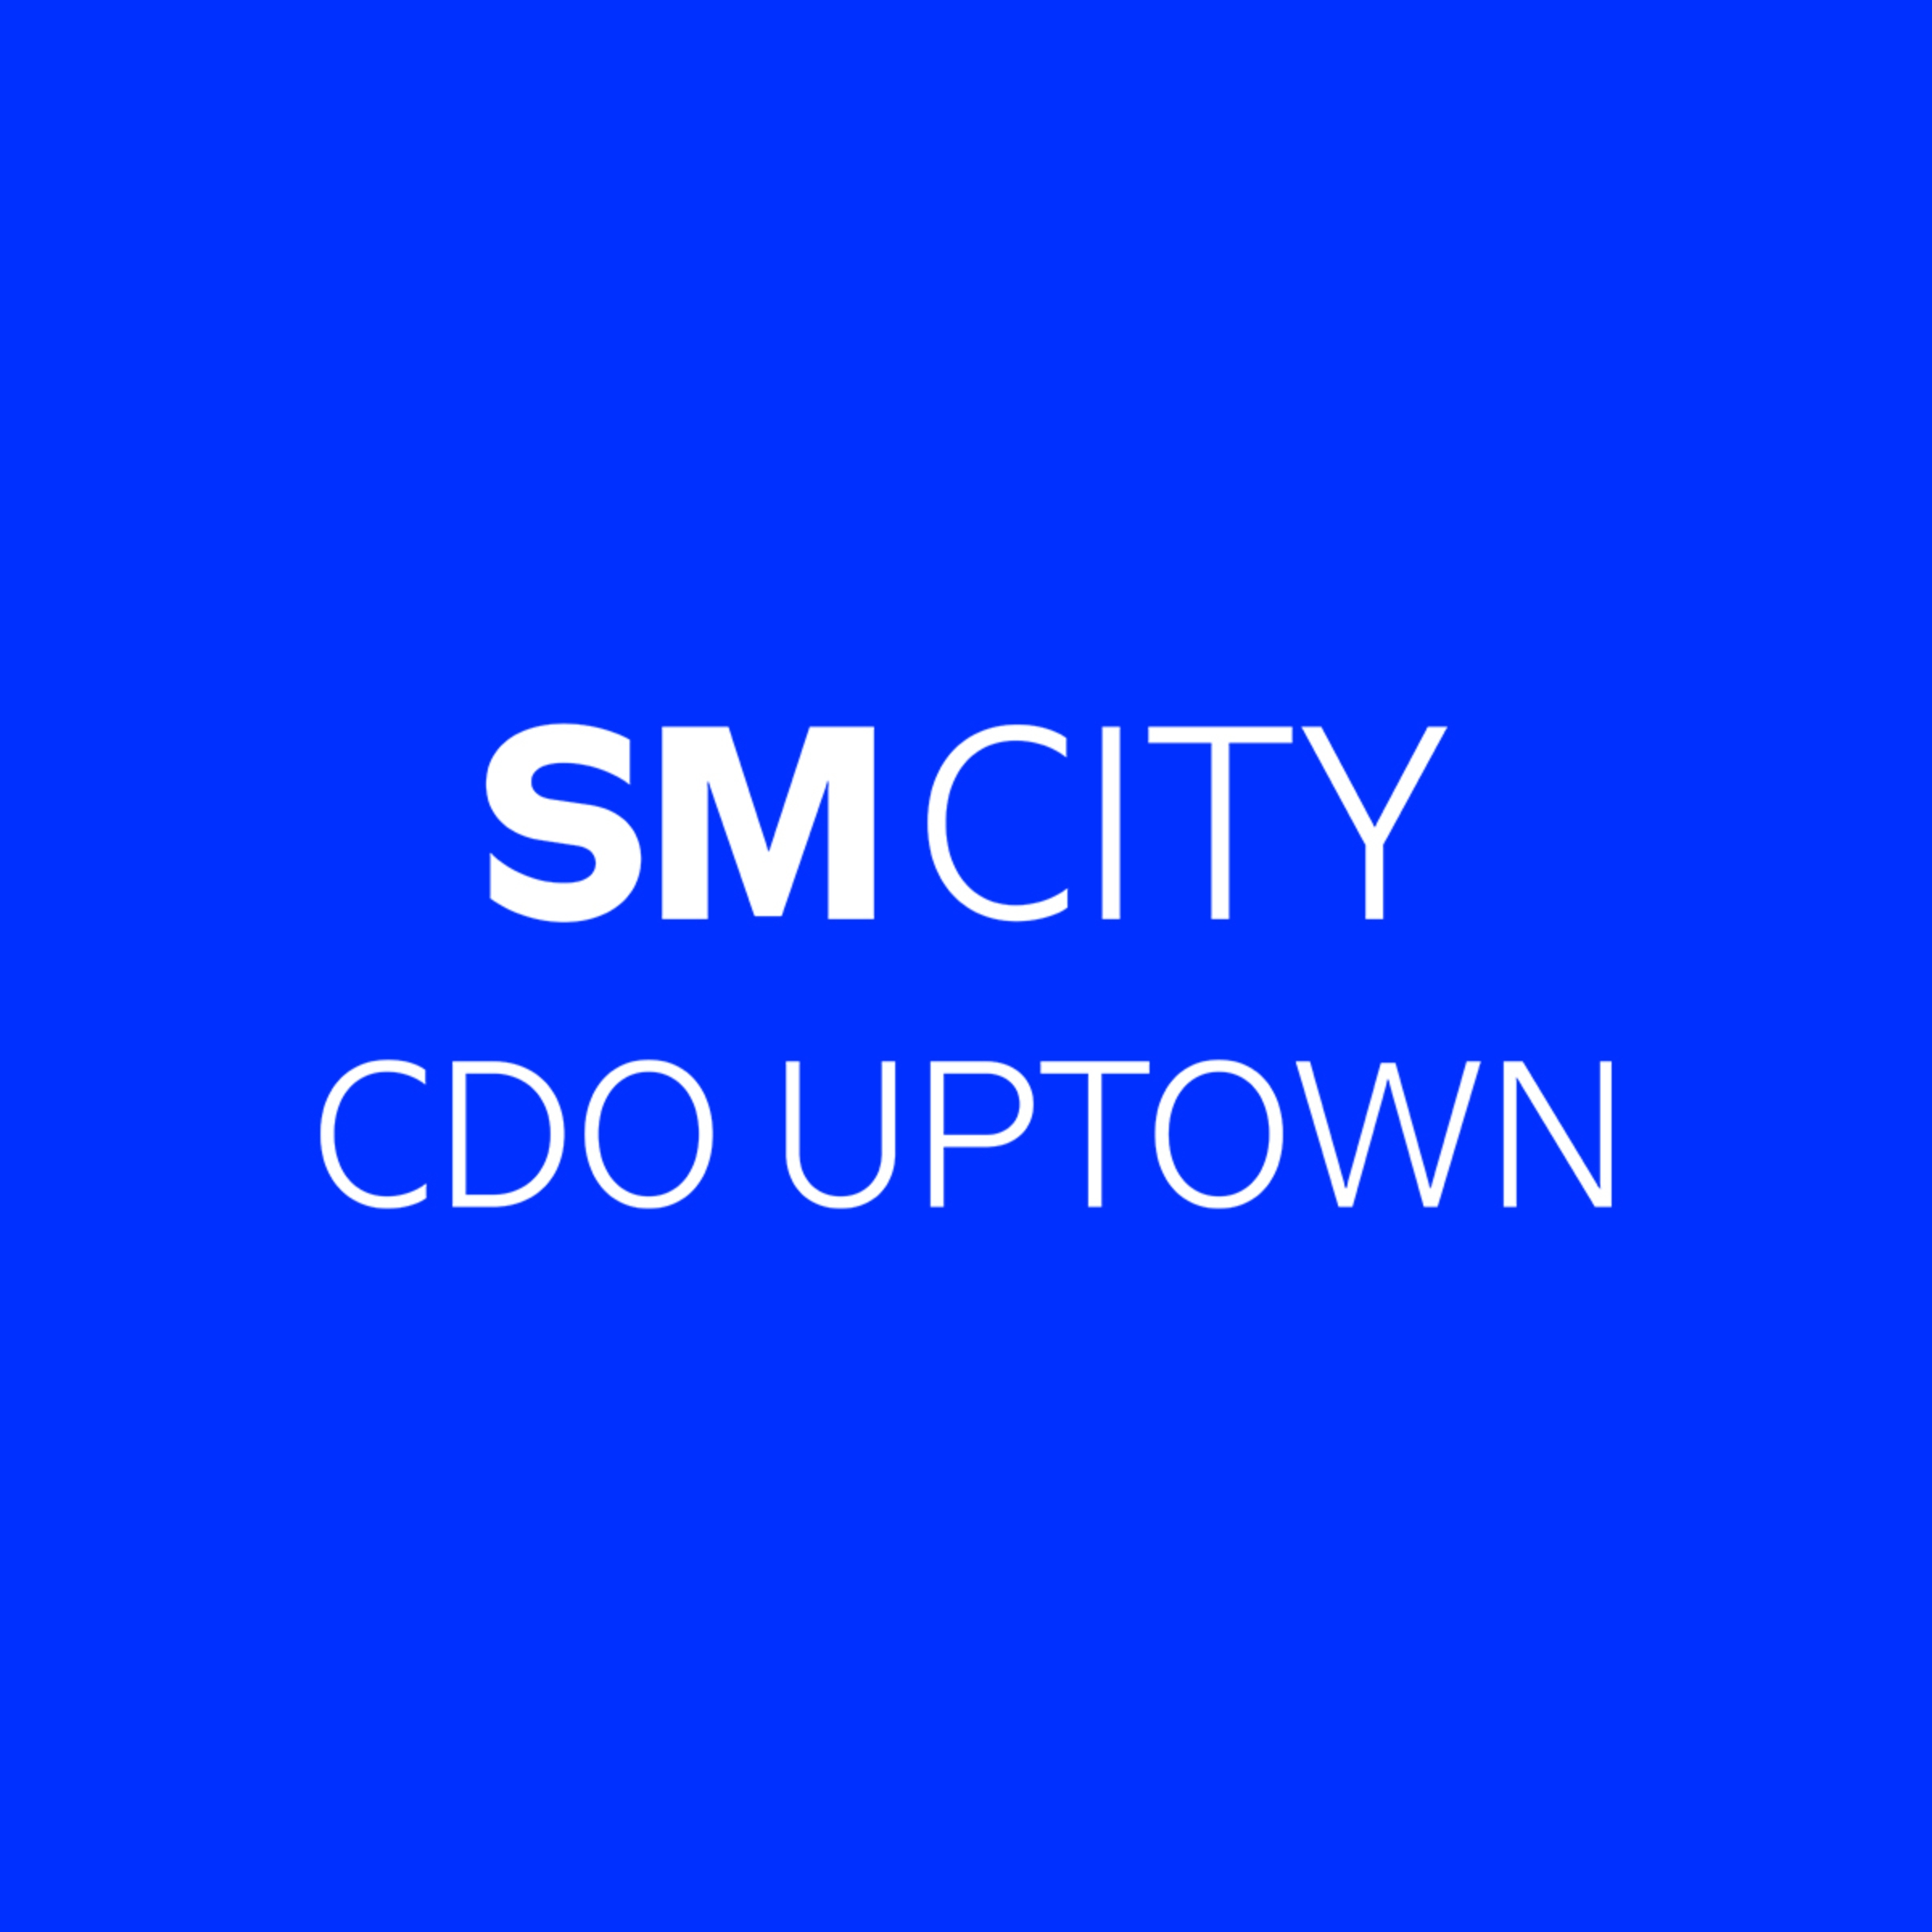 SM City Cagayan De Oro